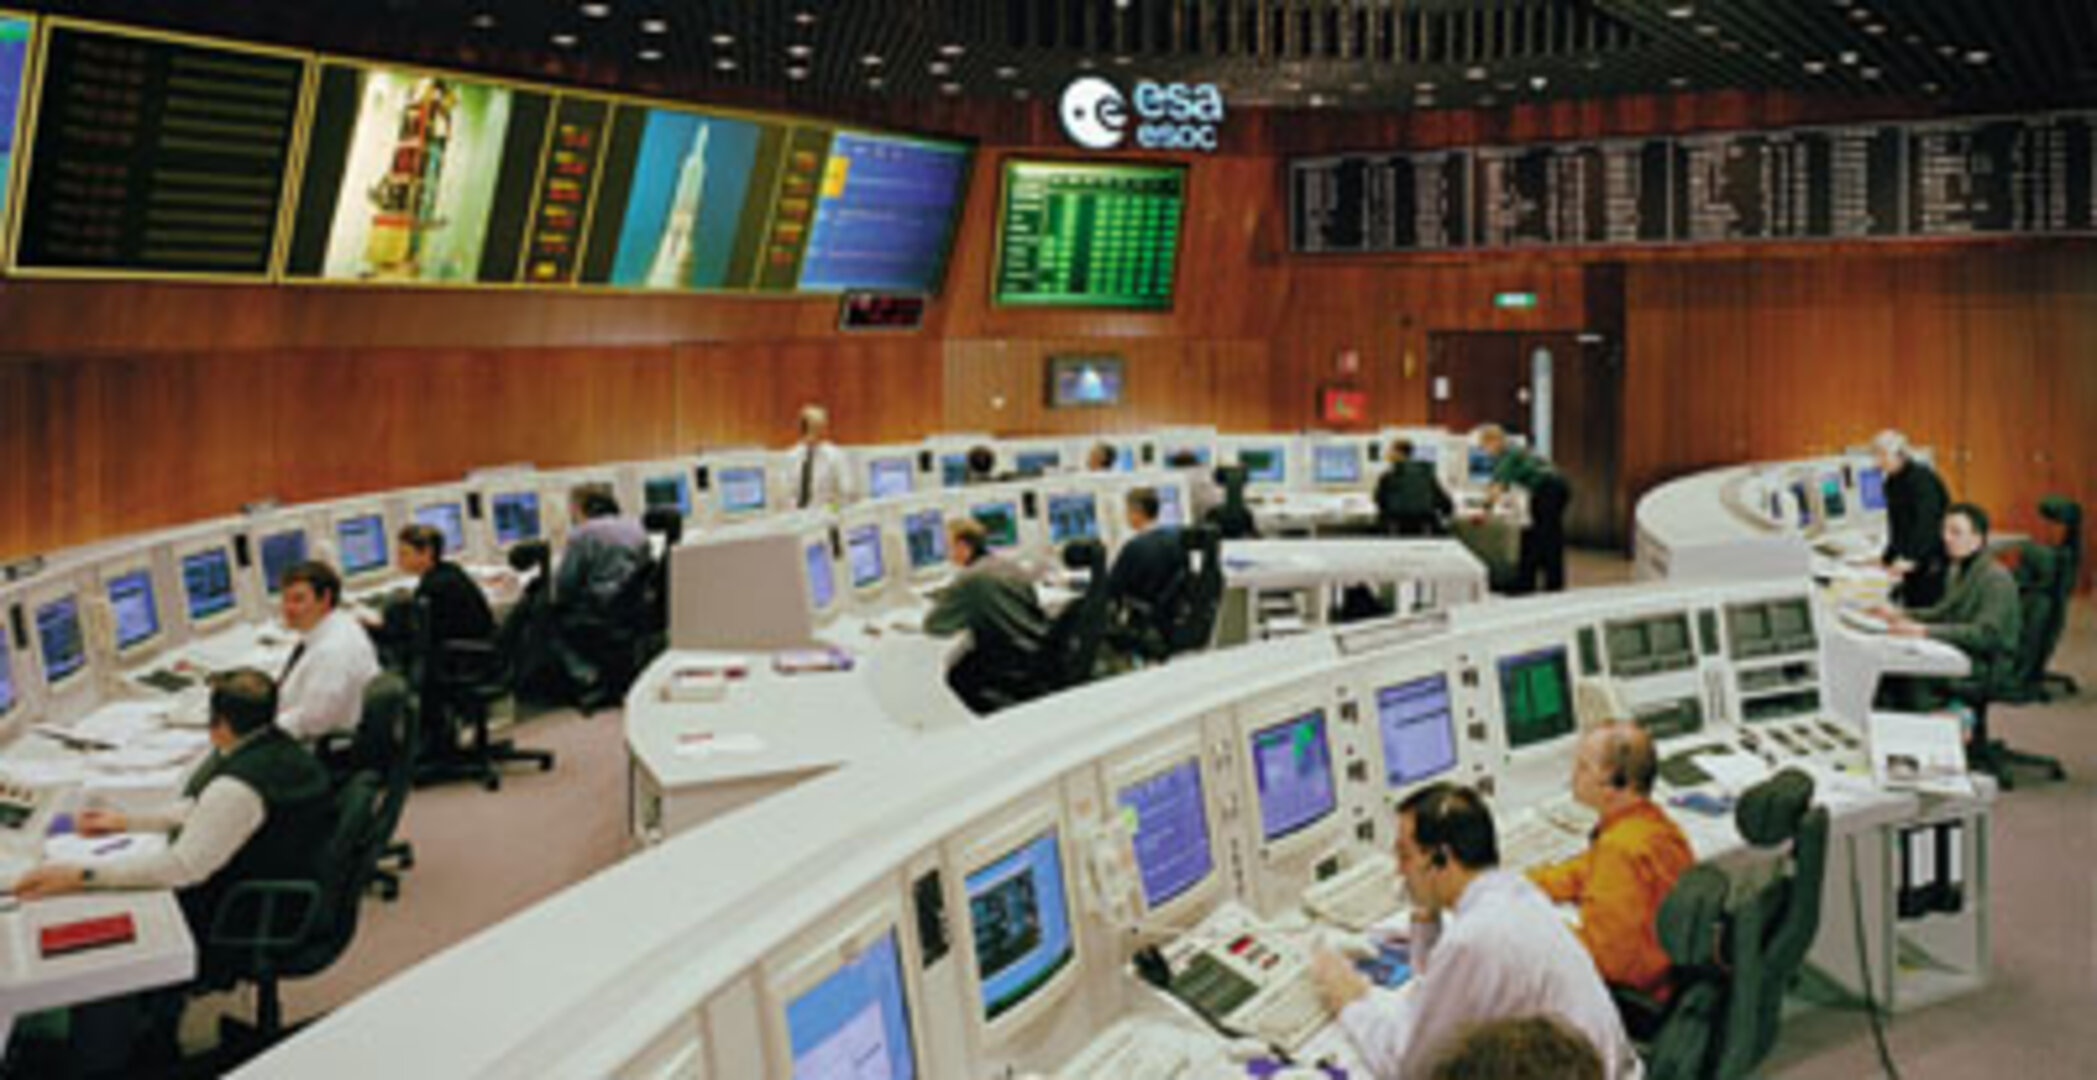 Hauptkontrollraum des ESOC, seit 1968 im hessischen Darmstadt angesiedelt